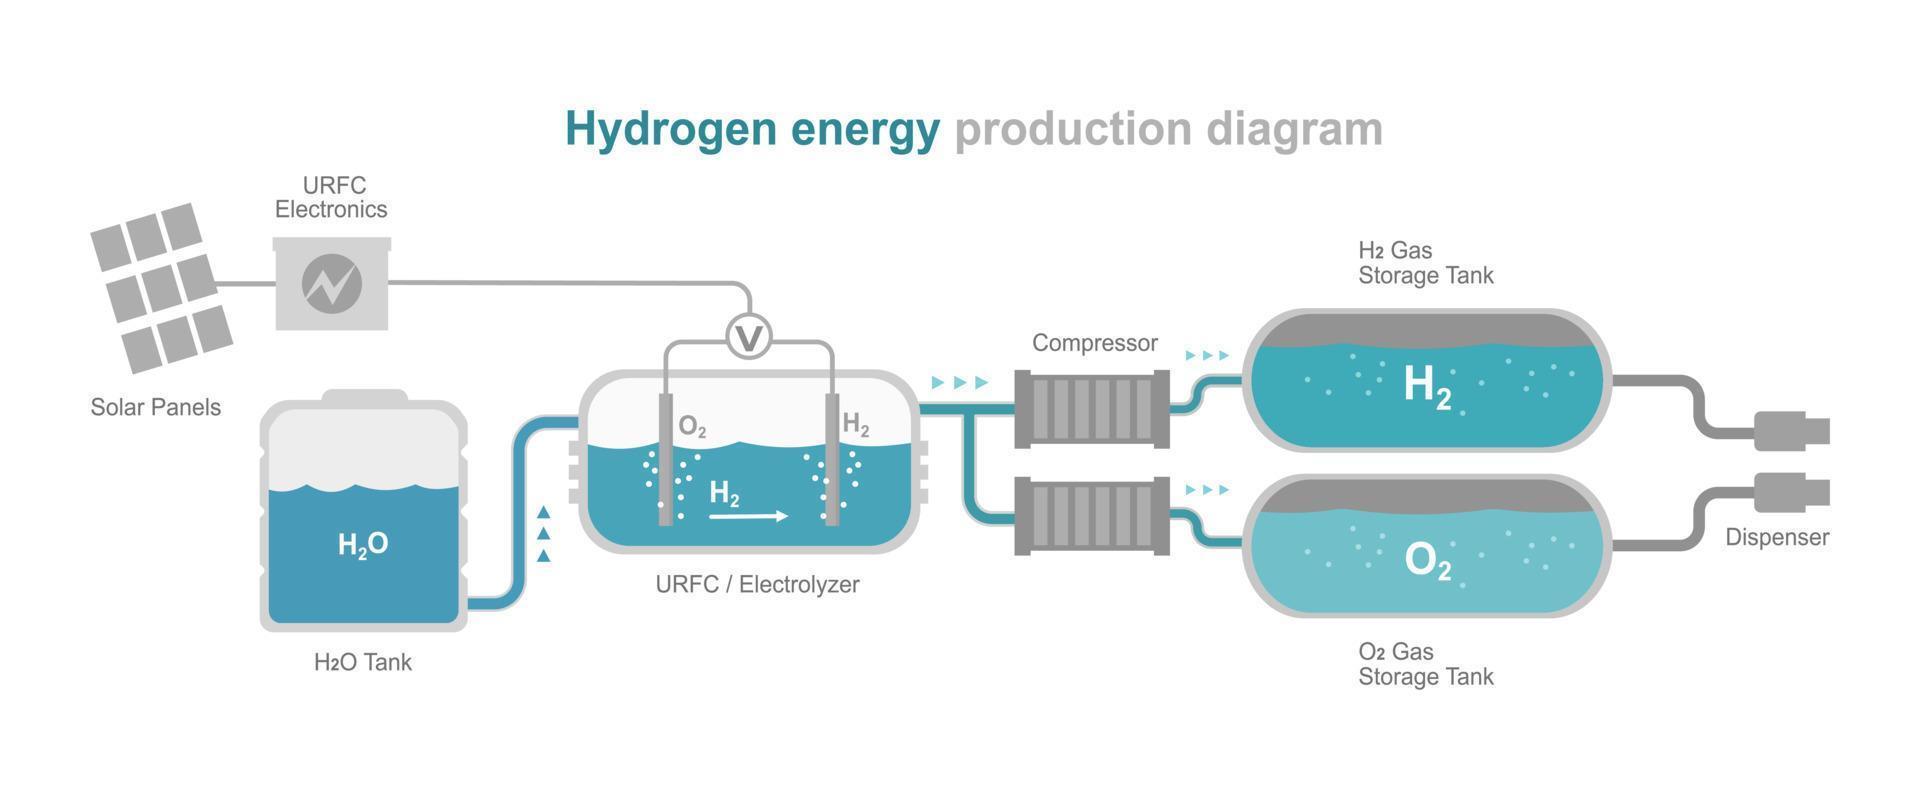 usina de energia de hidrogênio energia verde diagrama de sistema de ecologia layout simples plano vetor